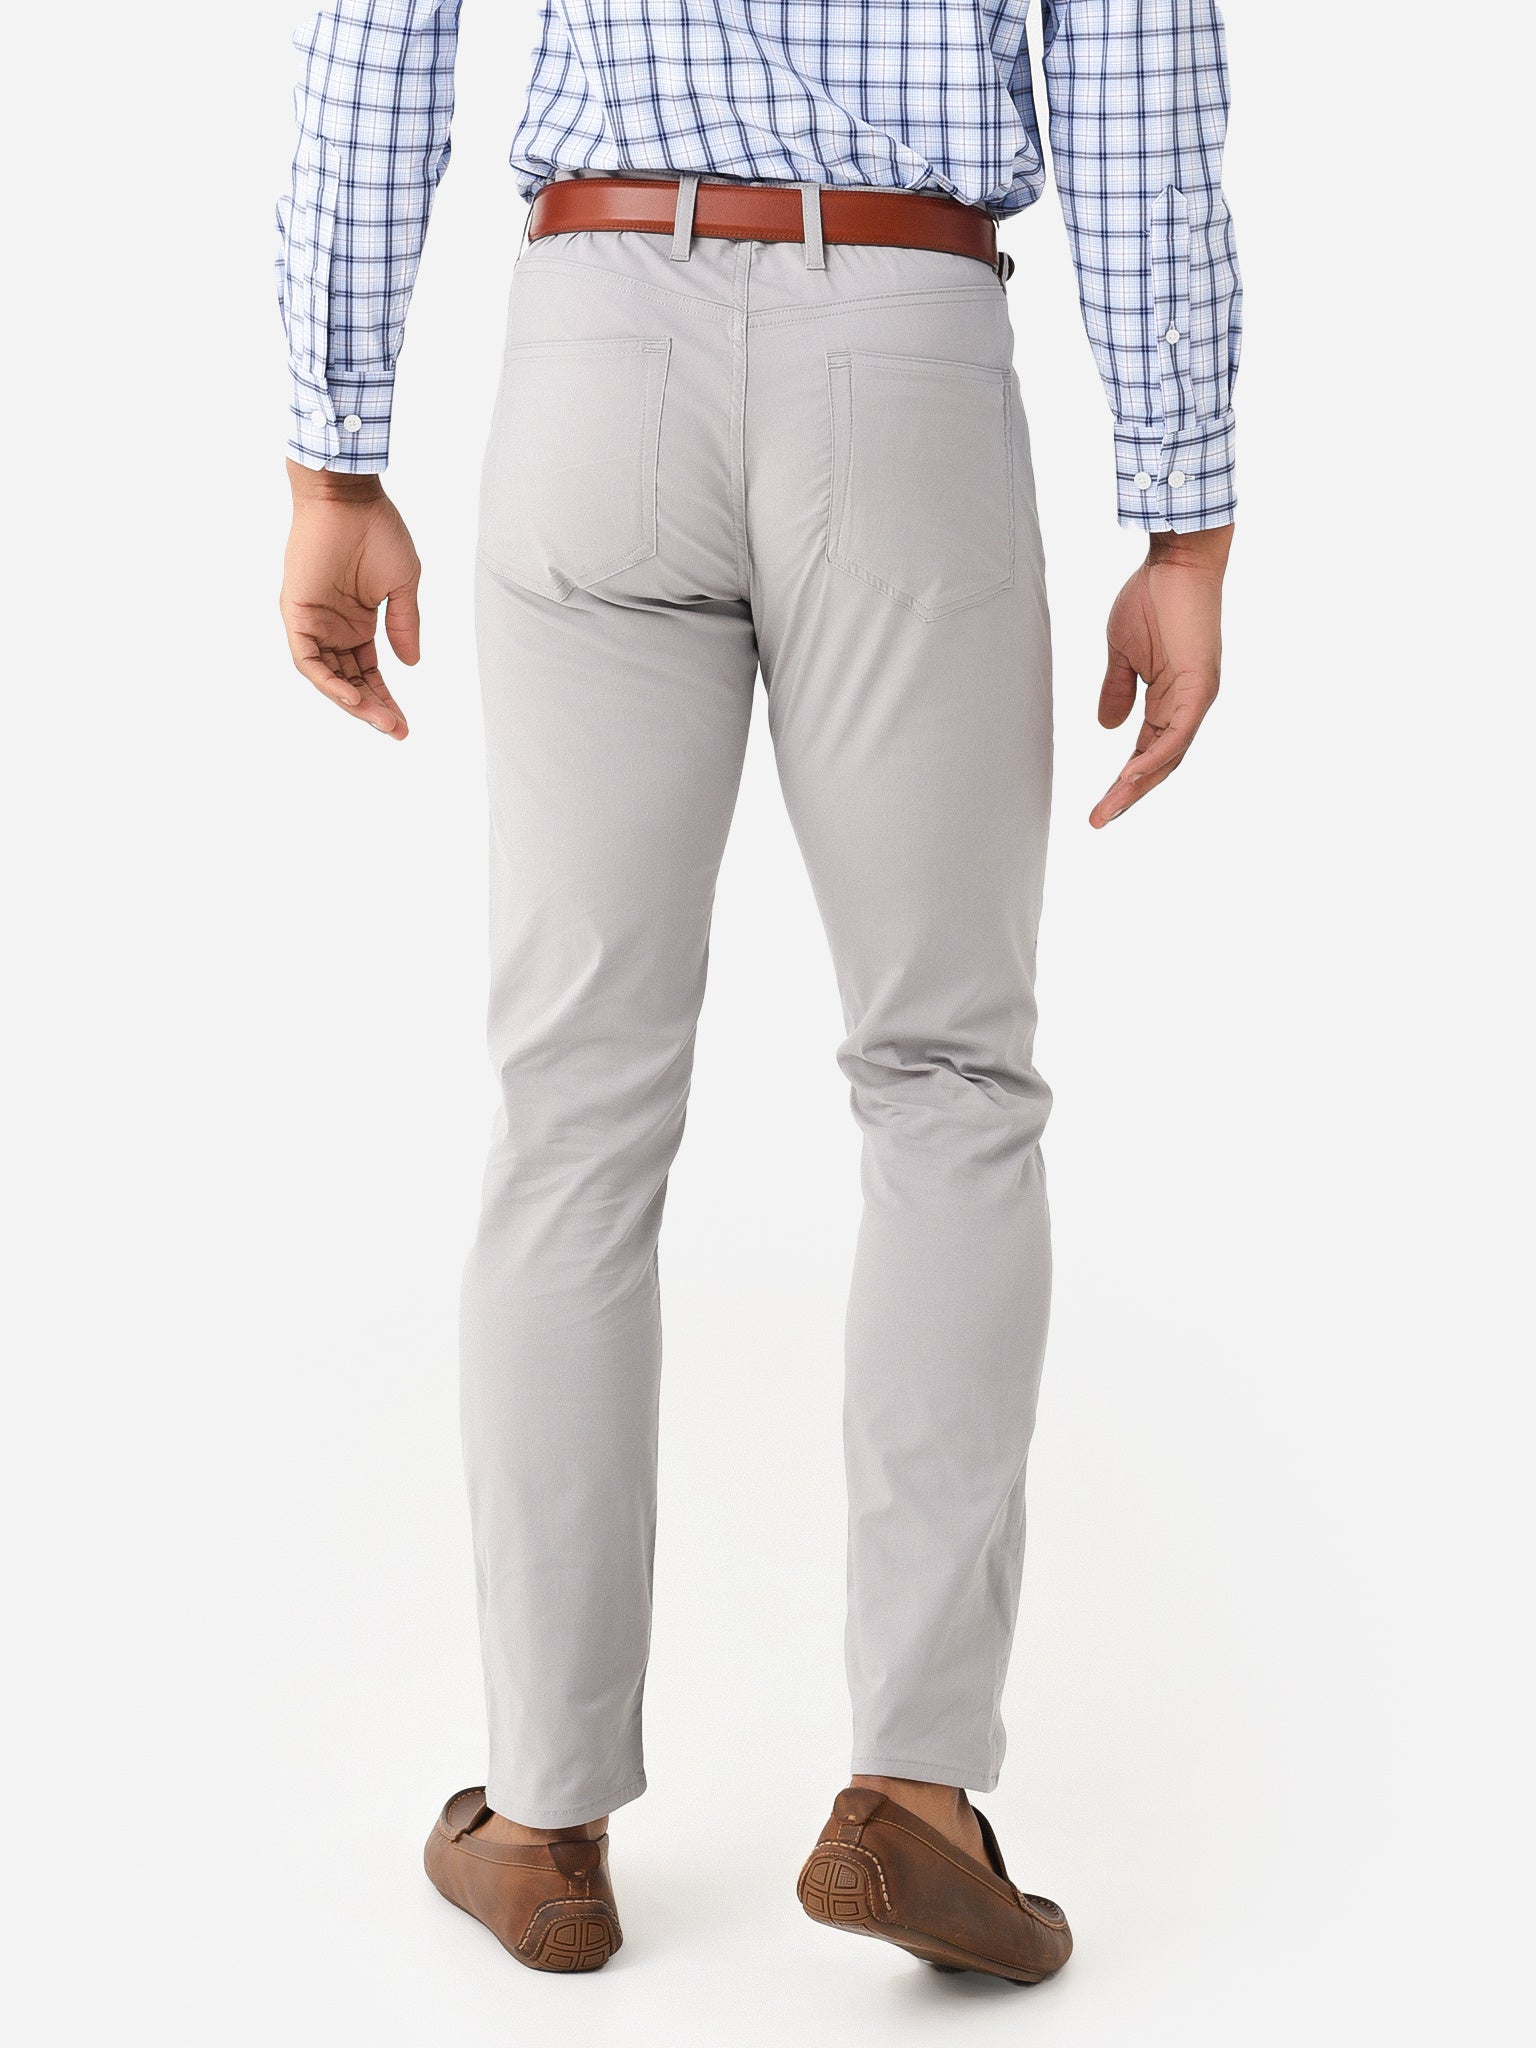 T the brand Men Formal Check Trouser - Navy Blue | Tea & Tailoring